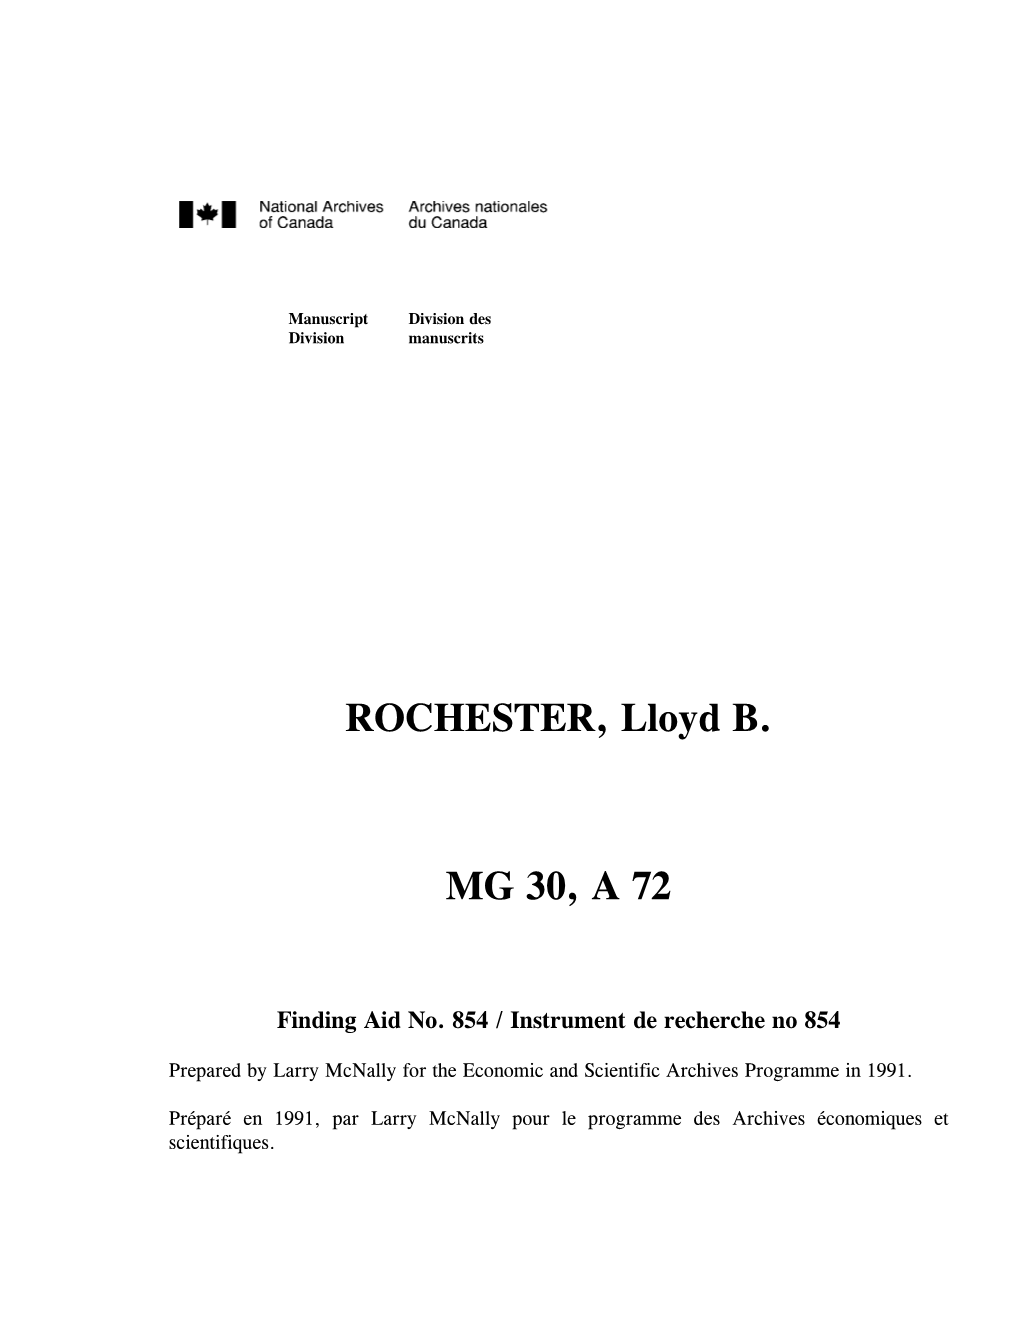 ROCHESTER, Lloyd B. MG 30, a 72